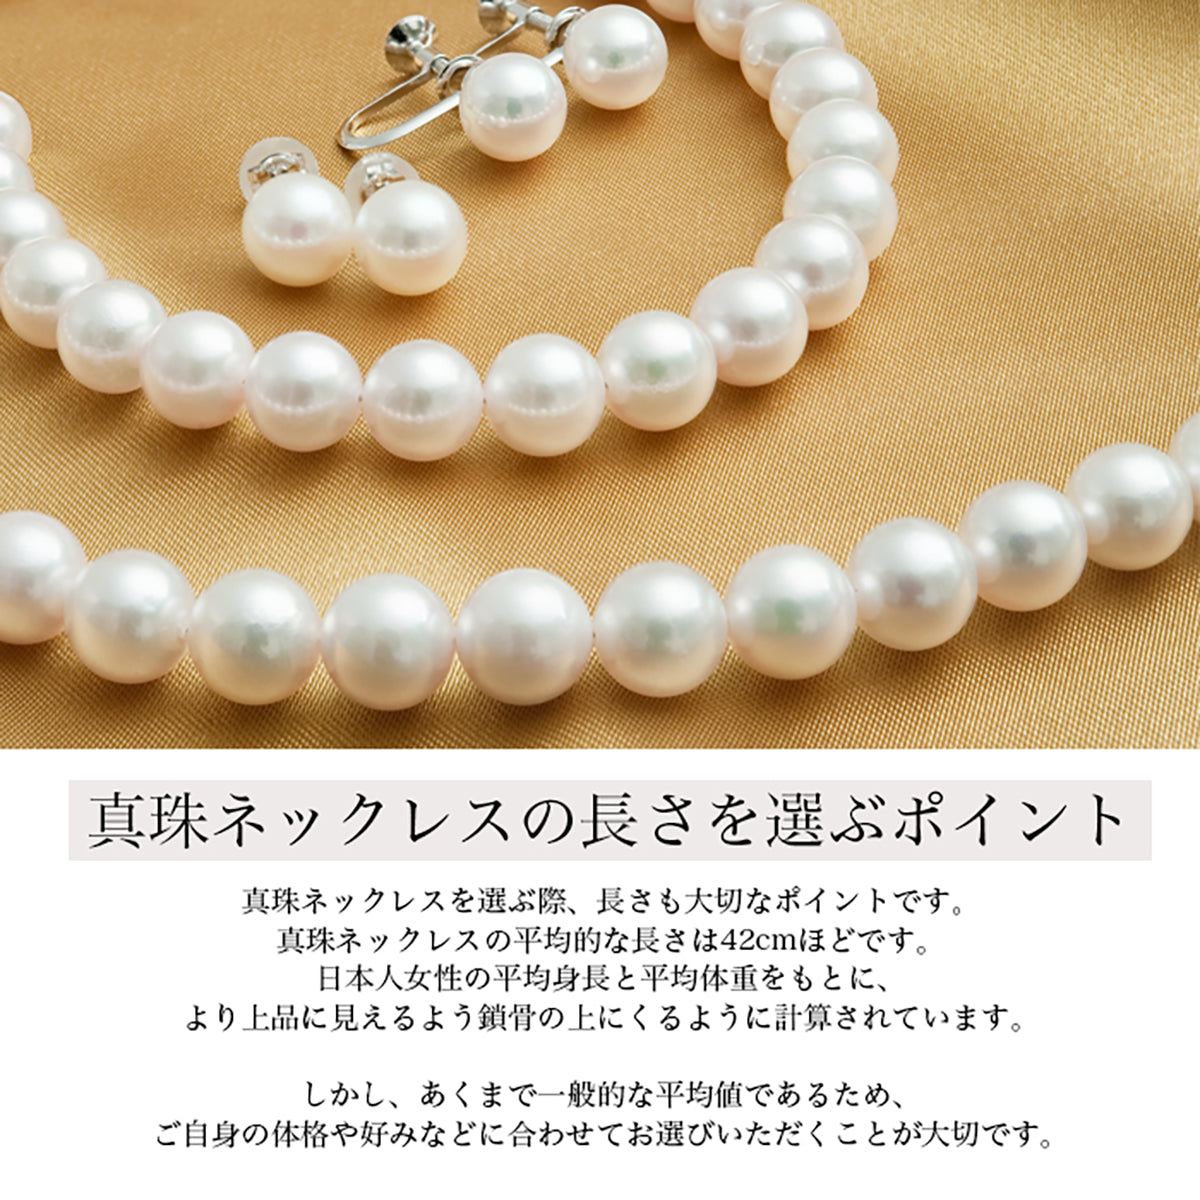 約9mm【4月末出品終了❗】アコヤ真珠ホワイトパールネックレス(40cm)＆イヤリング